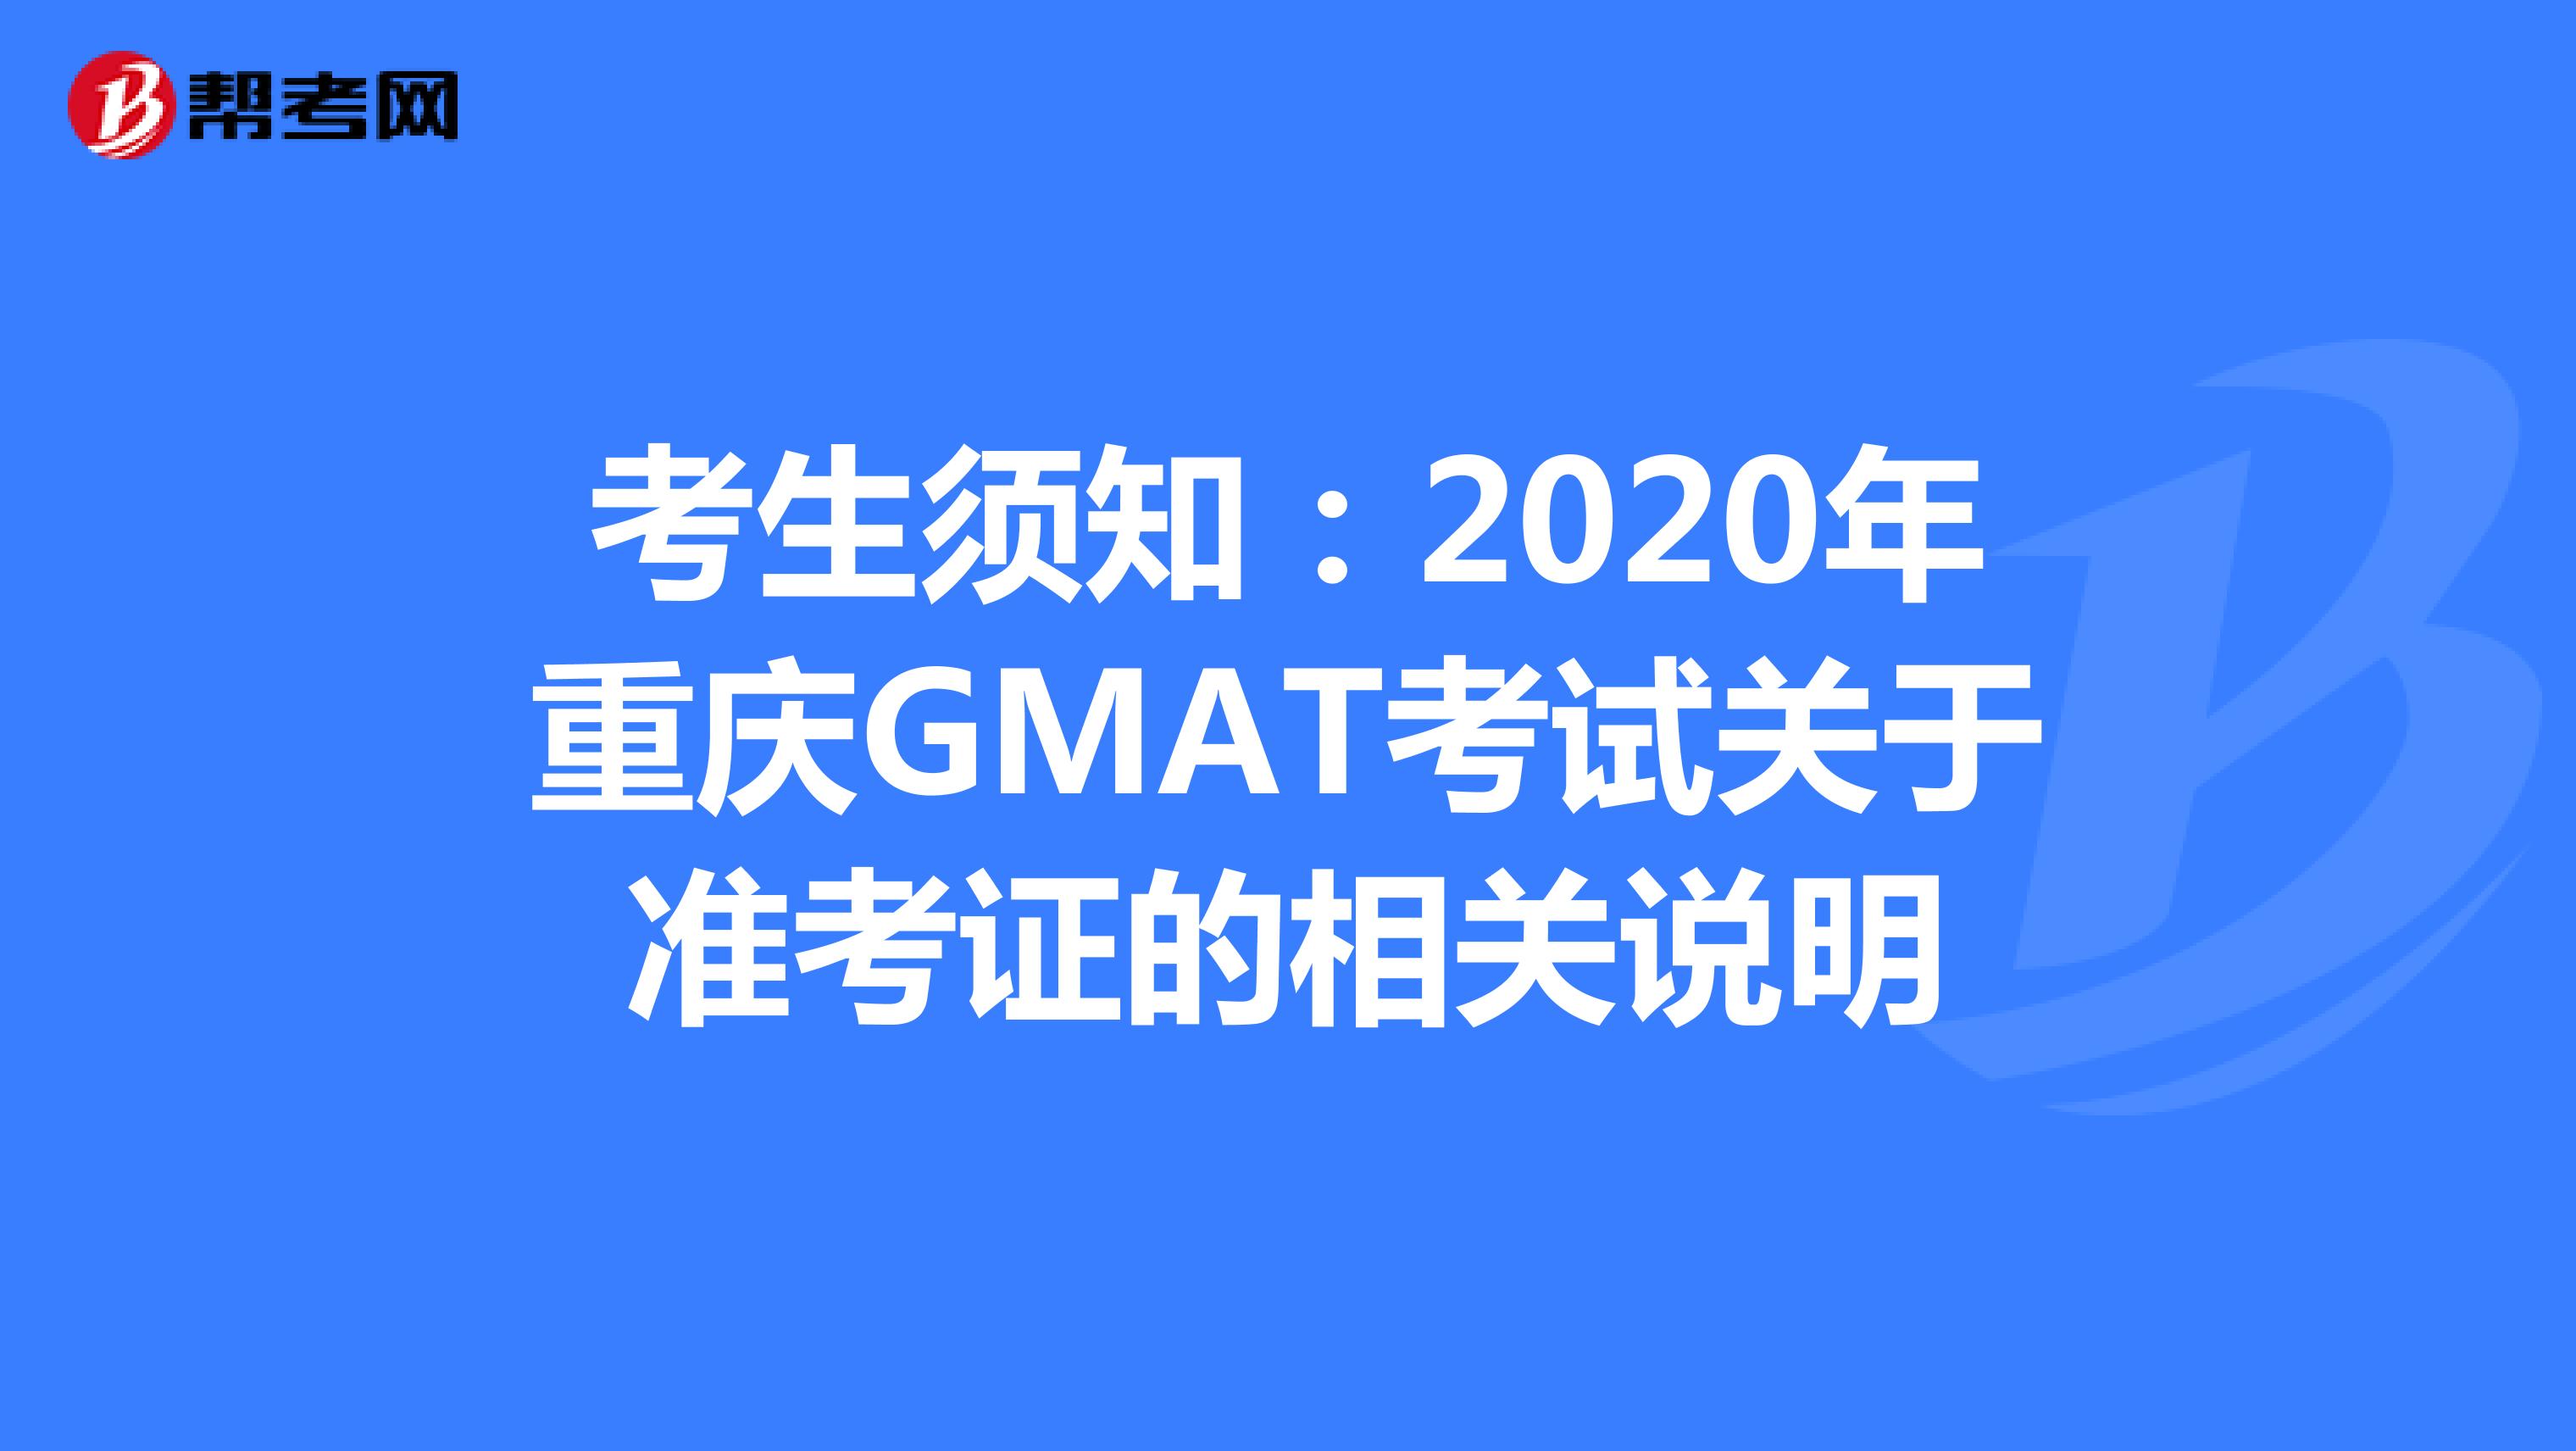 考生须知：2020年重庆GMAT考试关于准考证的相关说明